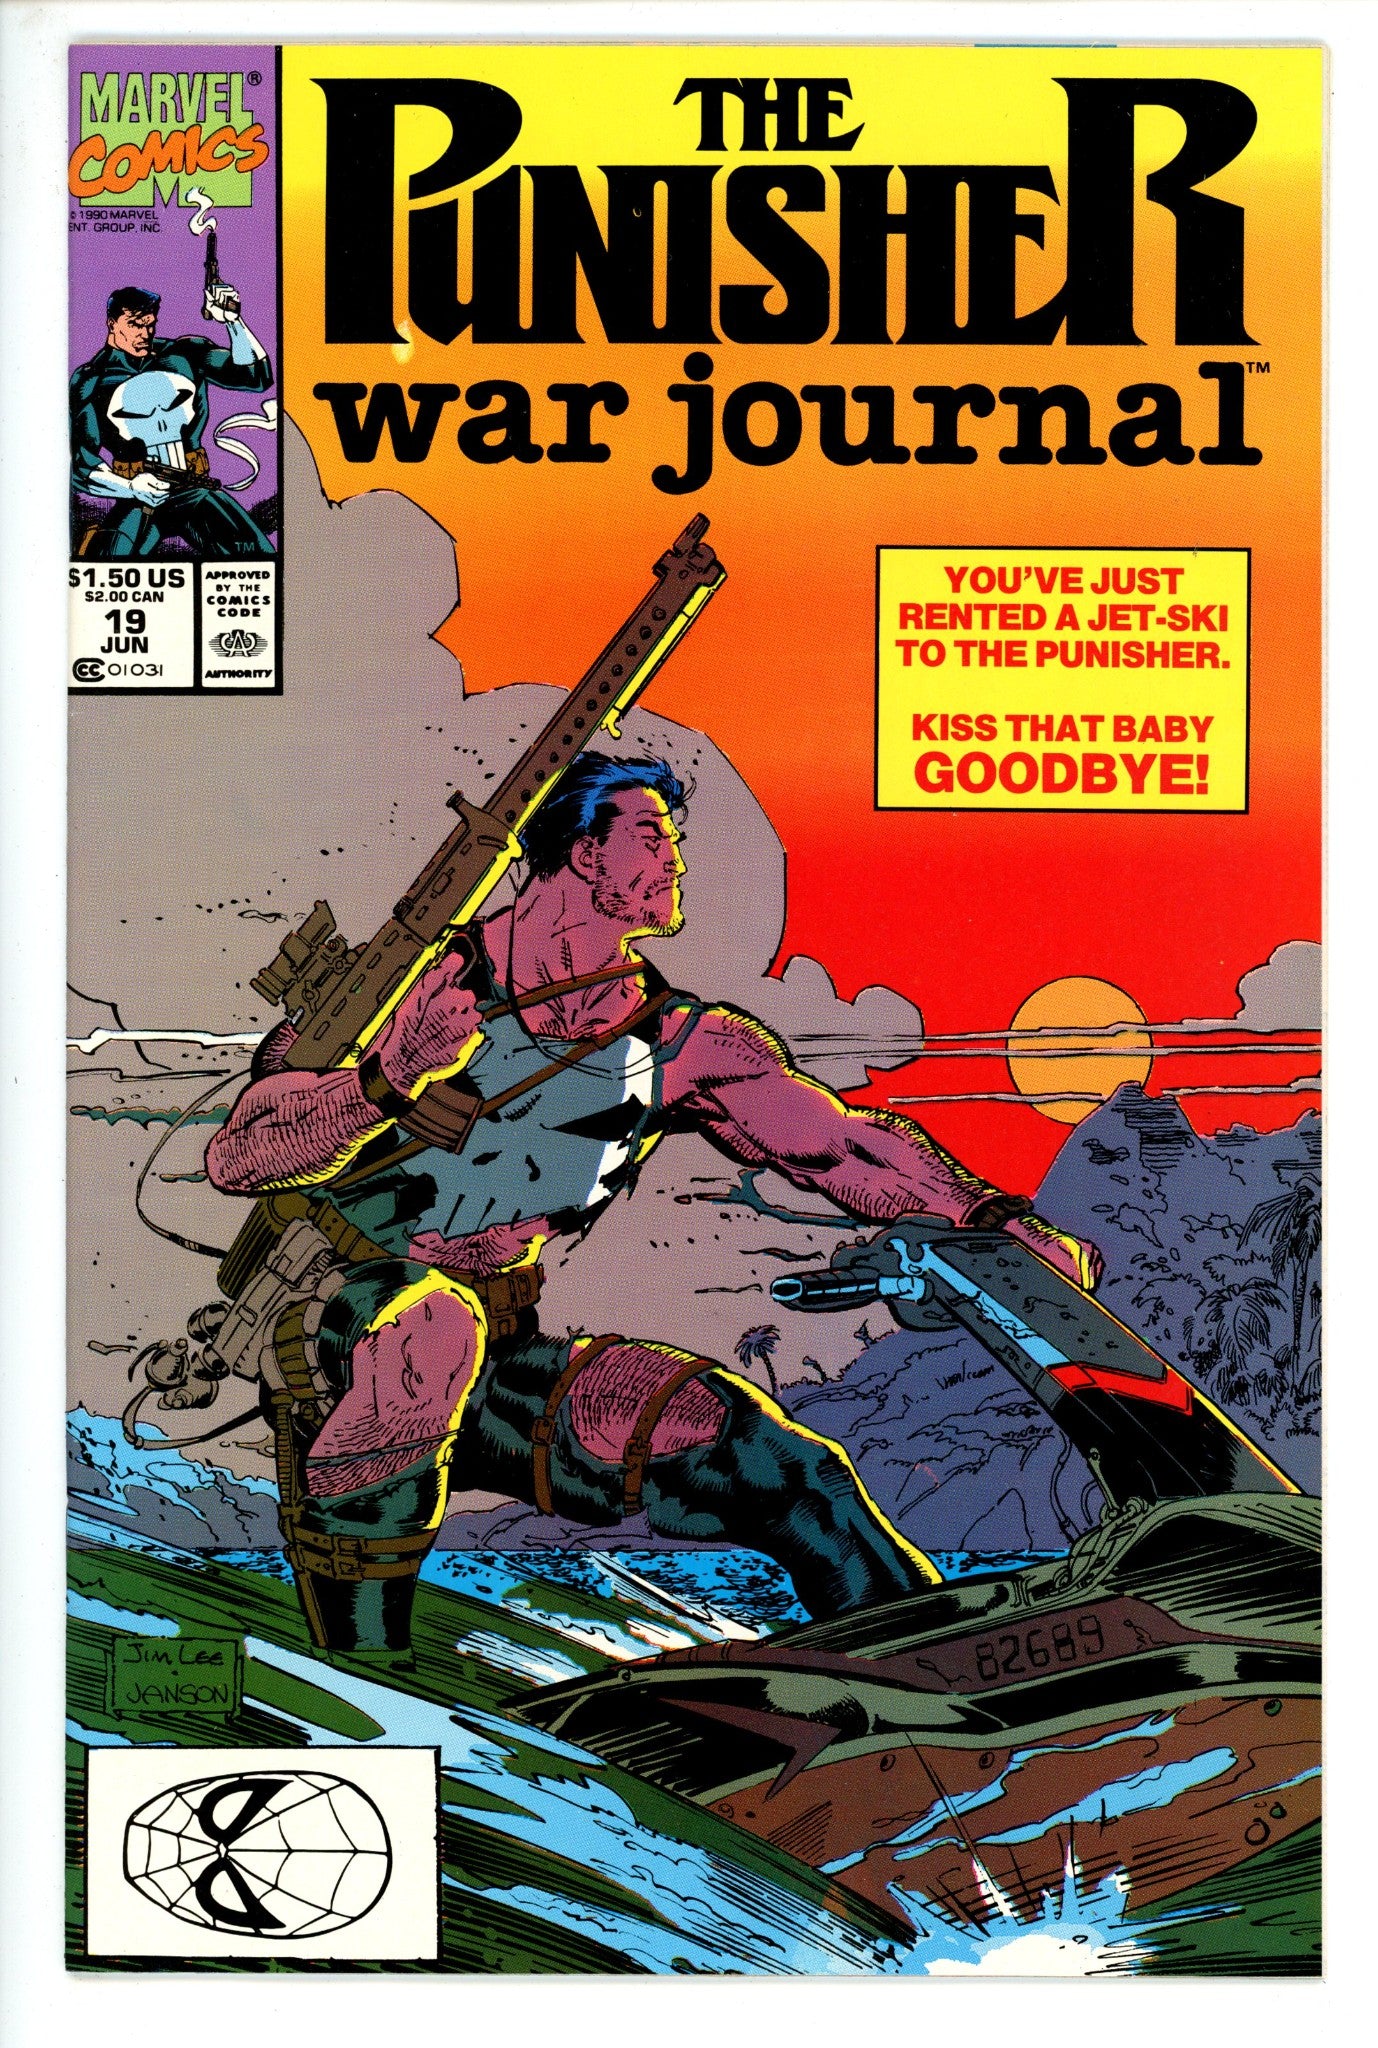 The Punisher War Journal Vol 1 19